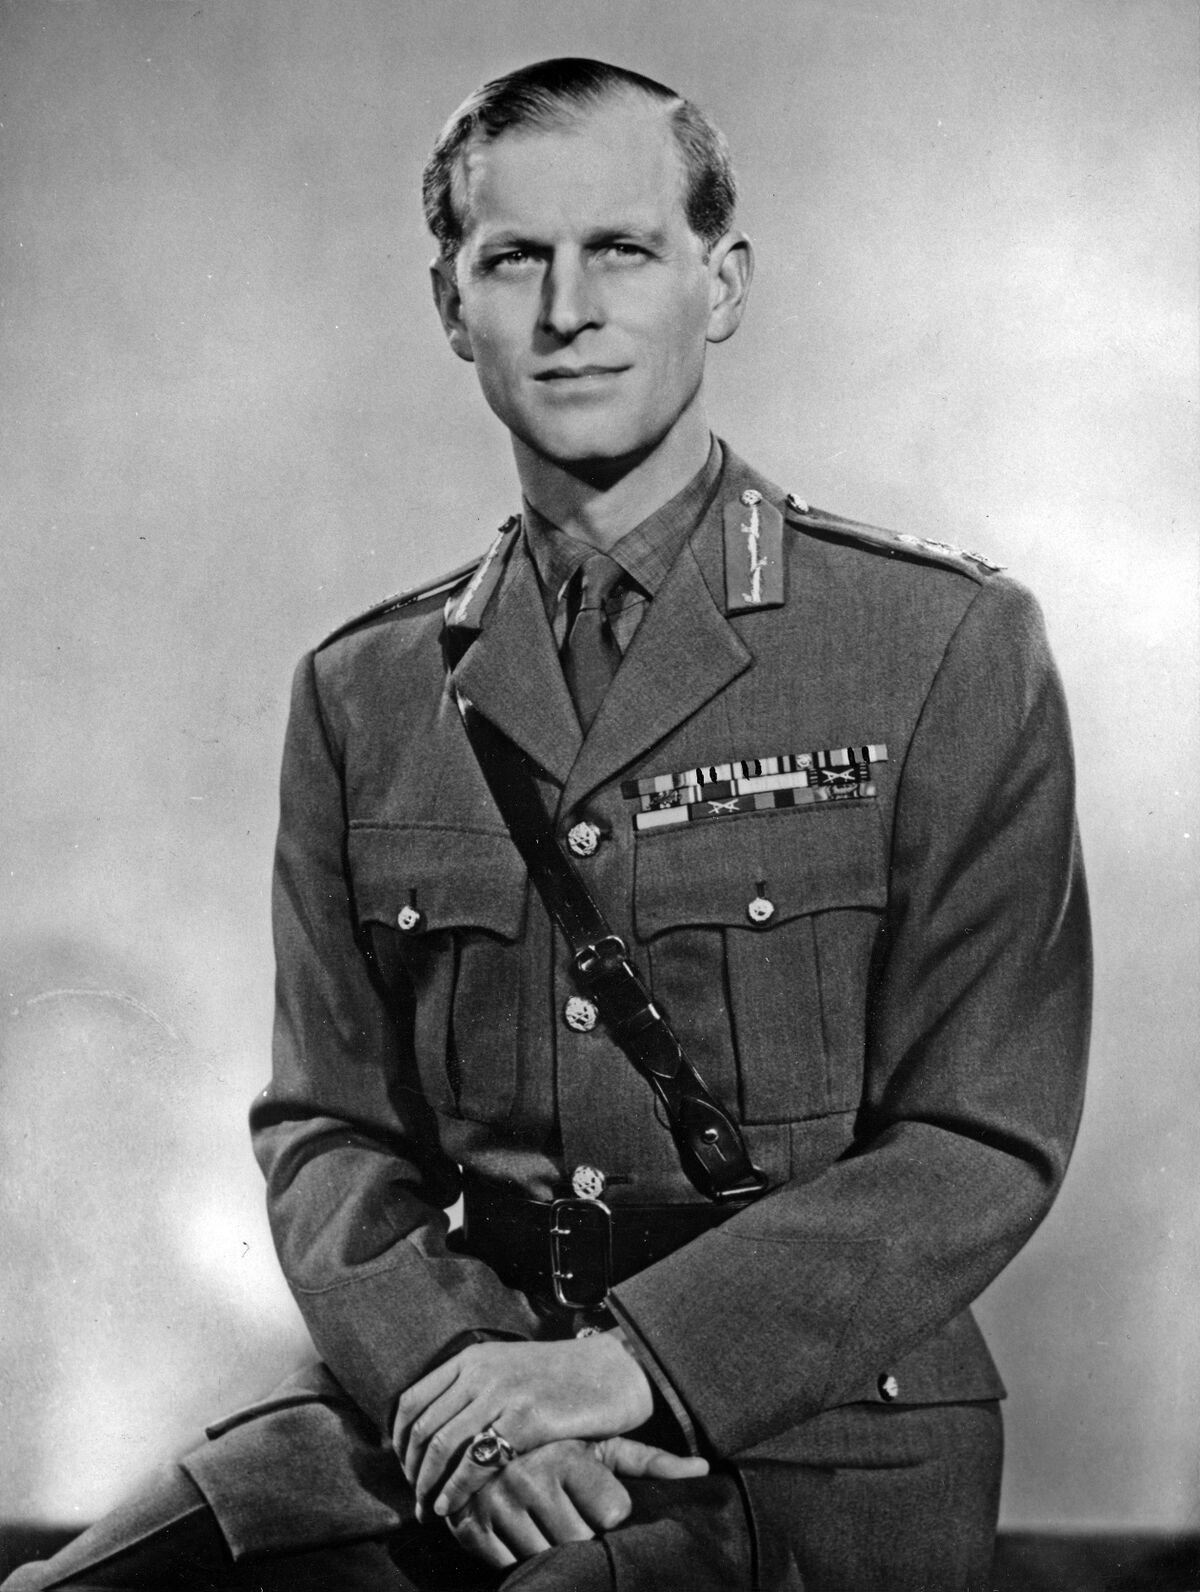  Duc d'Édimbourg, portant son uniforme de maréchal de l'armée britannique, 1953. | Photo : Getty Images